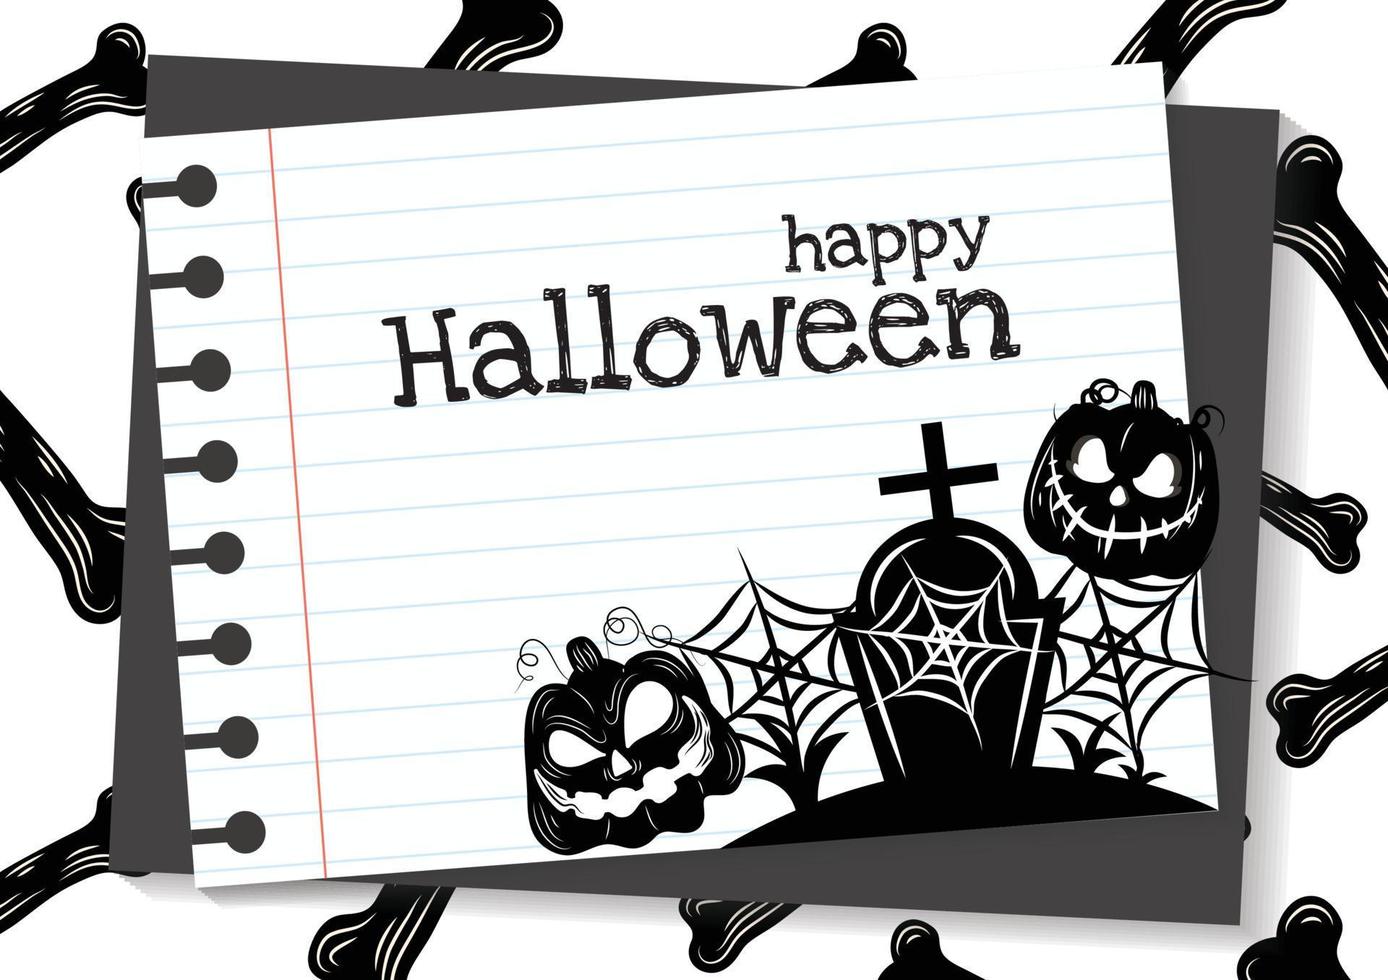 Halloween-Banner für weißen Hintergrund des Halloween-Content-Designs vektor